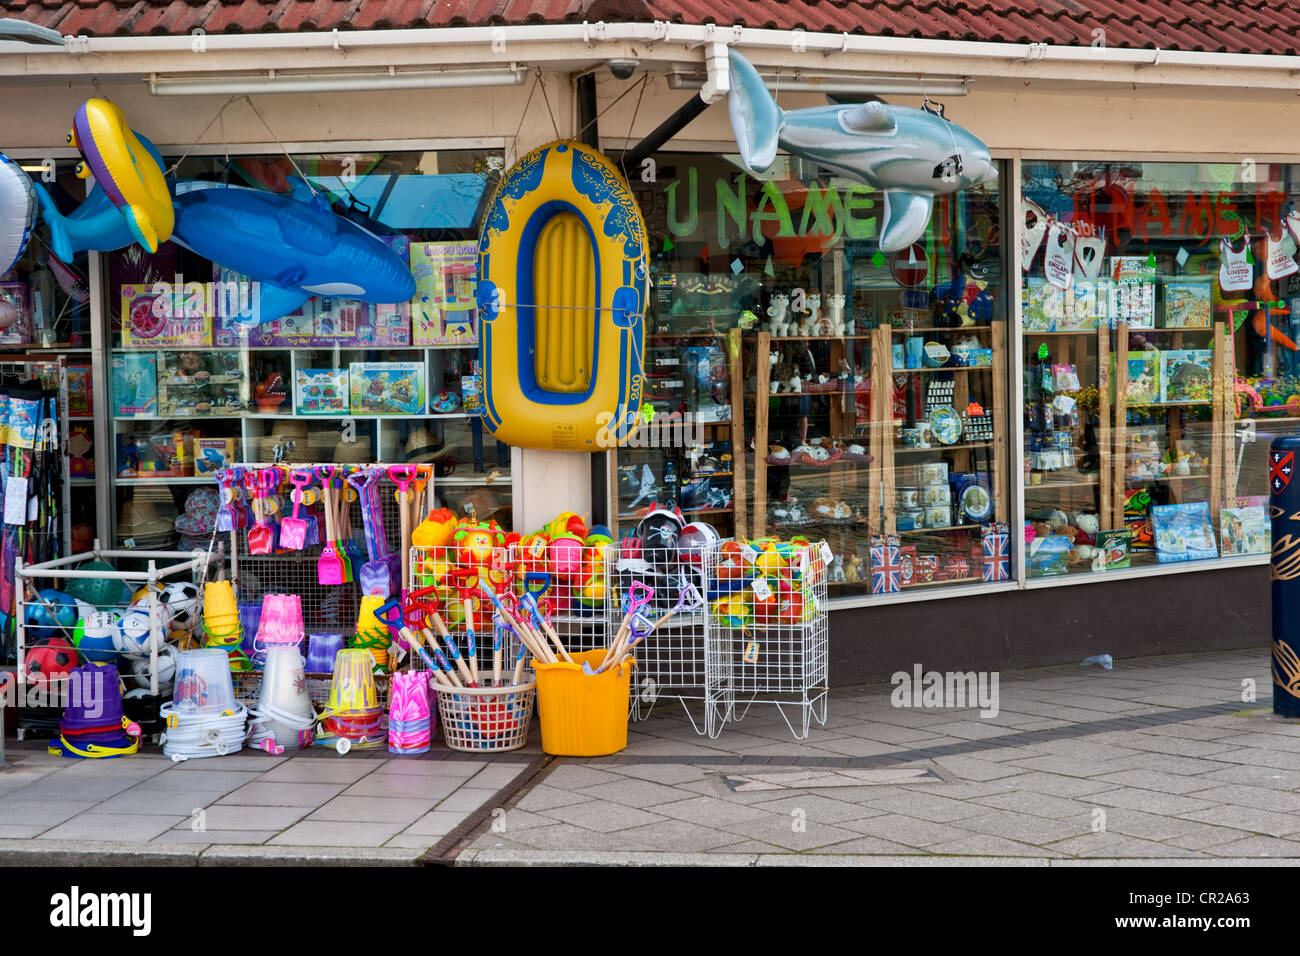 Station boutique vendant des jouets de plage de couleurs vives Banque D'Images